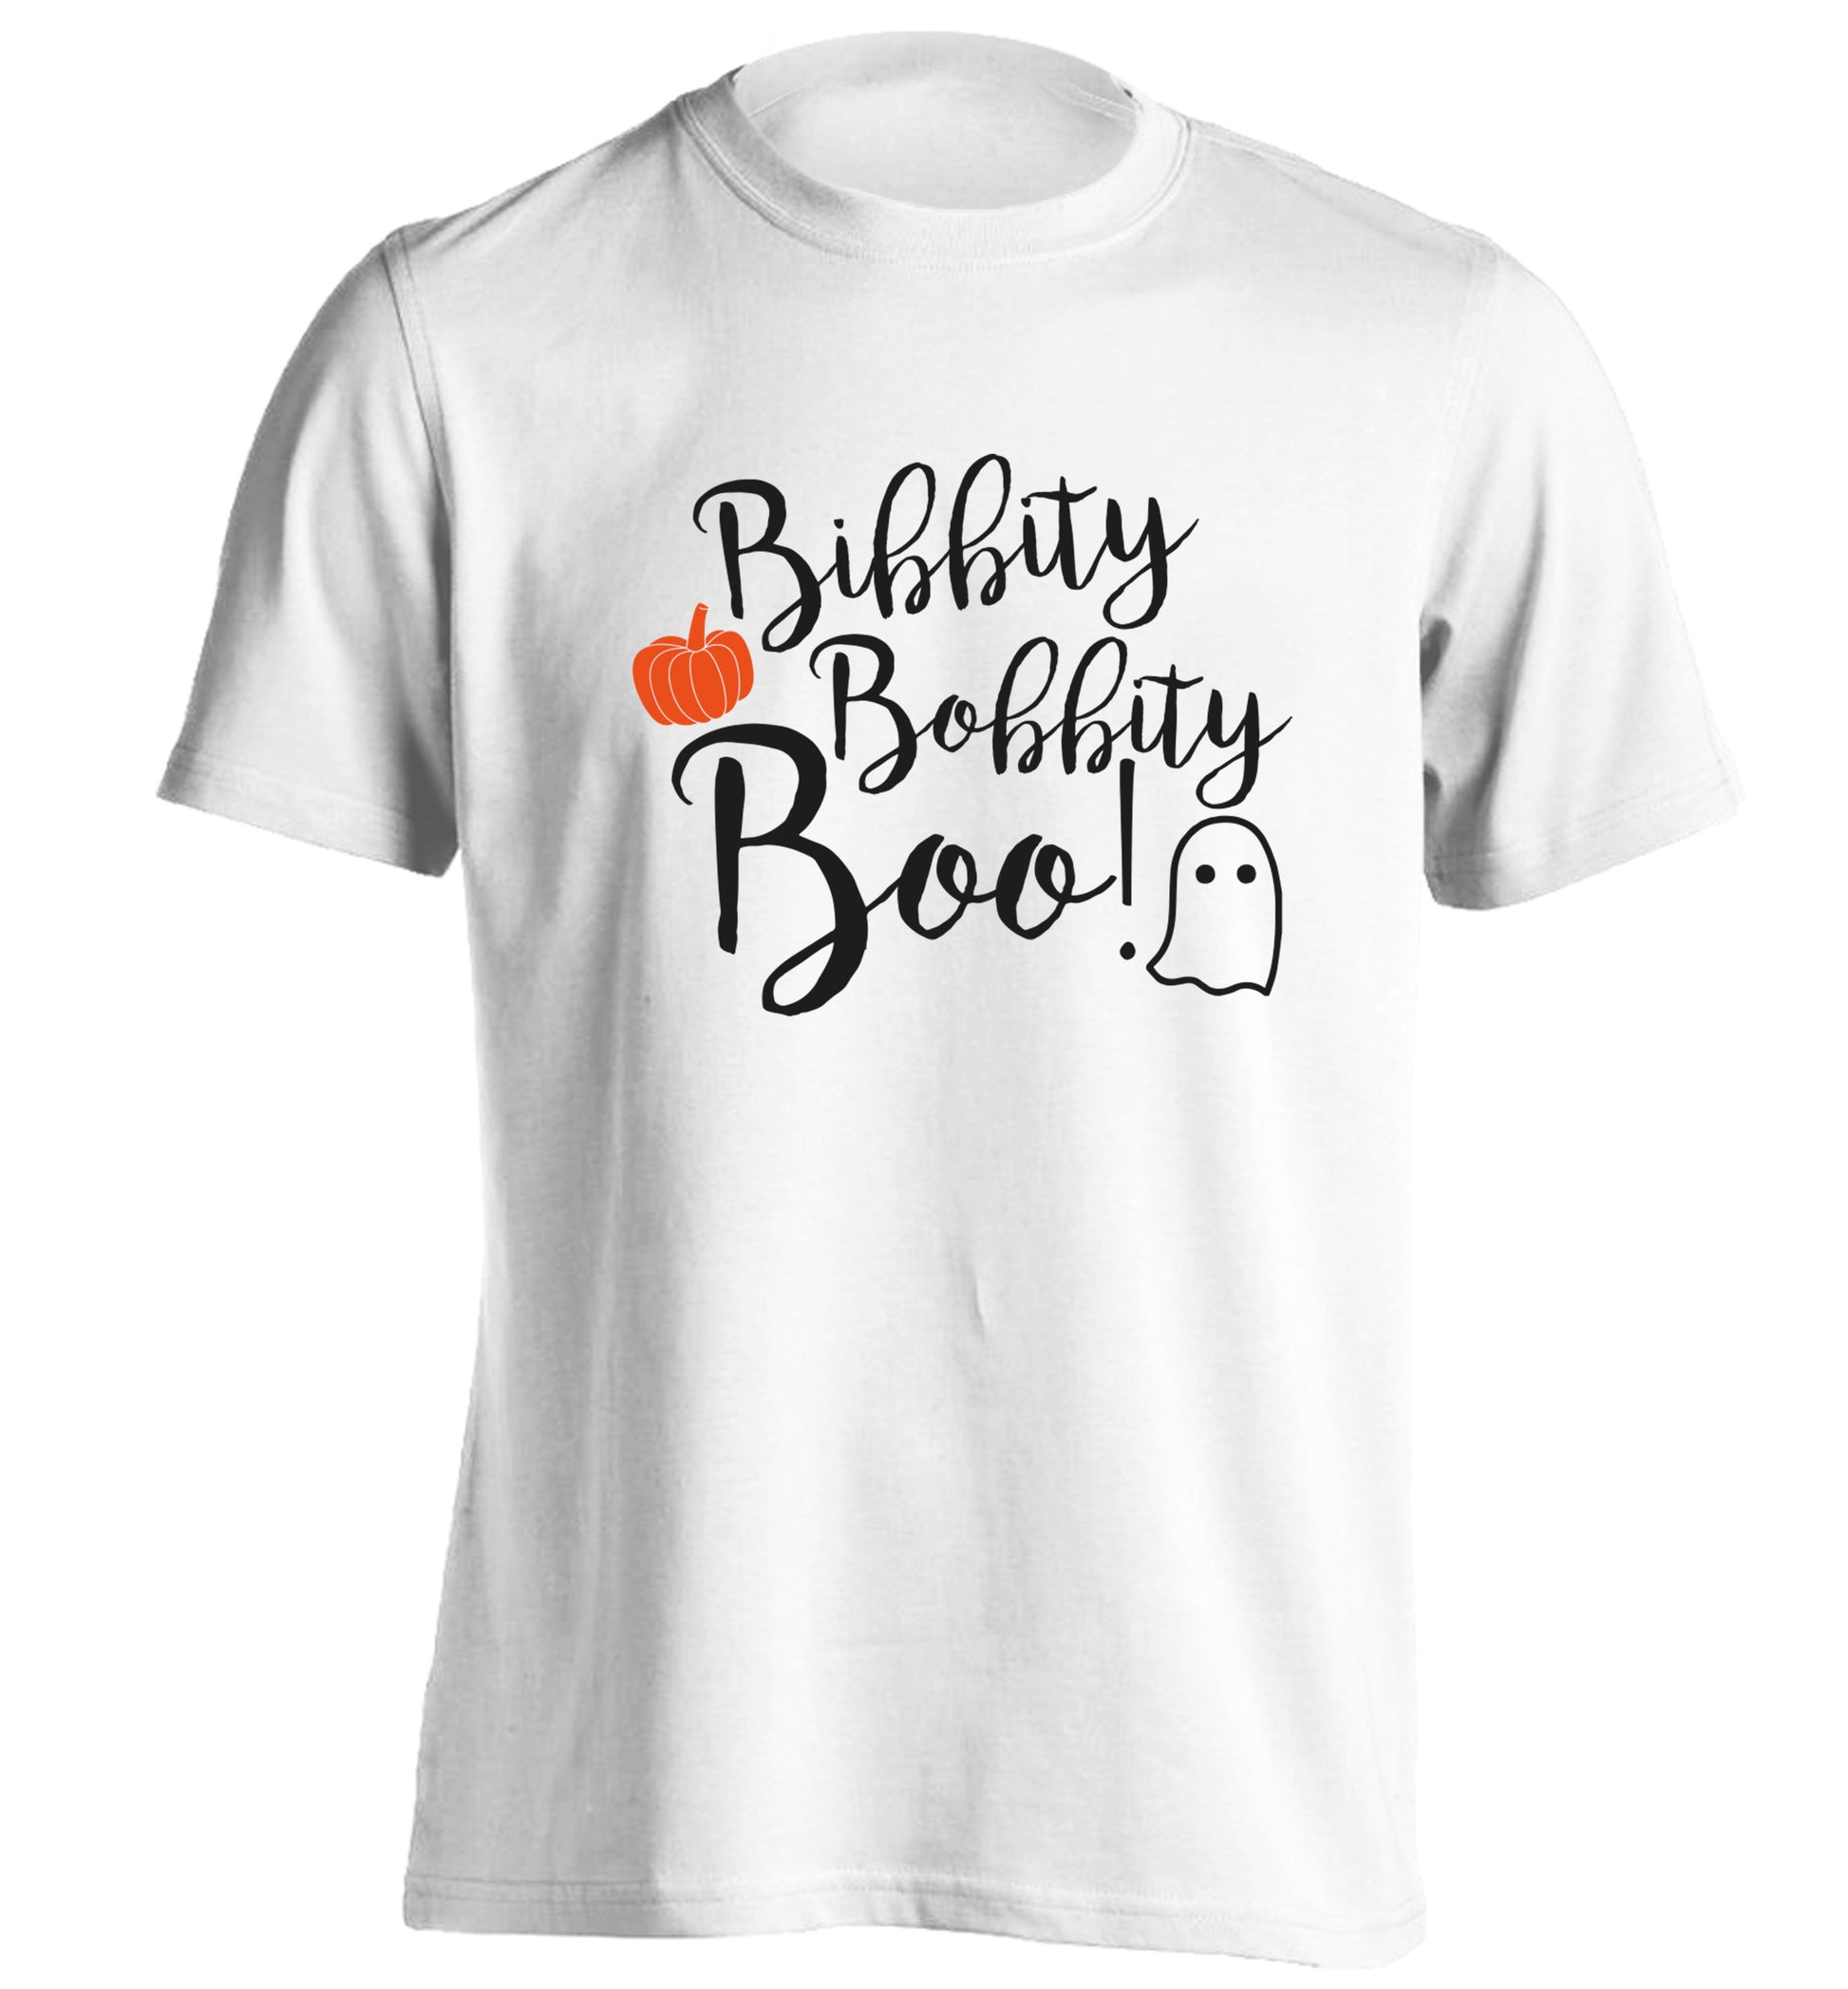 Bibbity bobbity boo! adults unisex white Tshirt 2XL